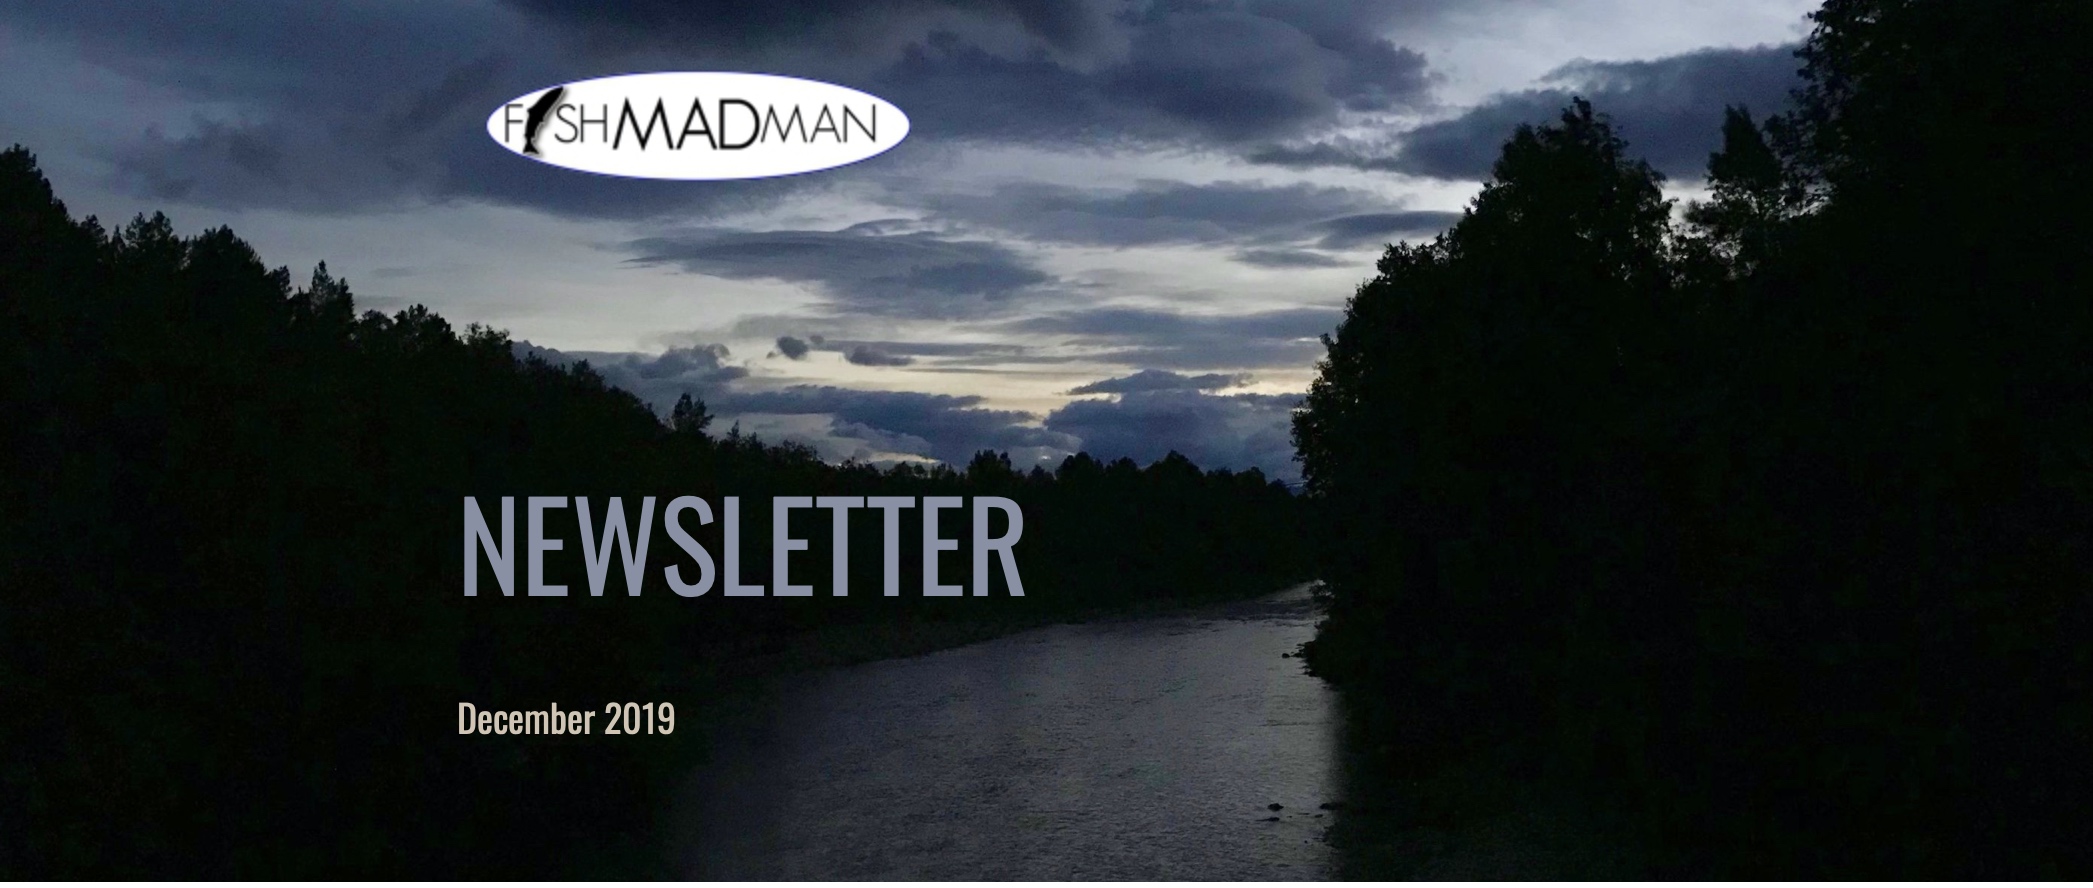 Newsletter Fishmadman December 2019